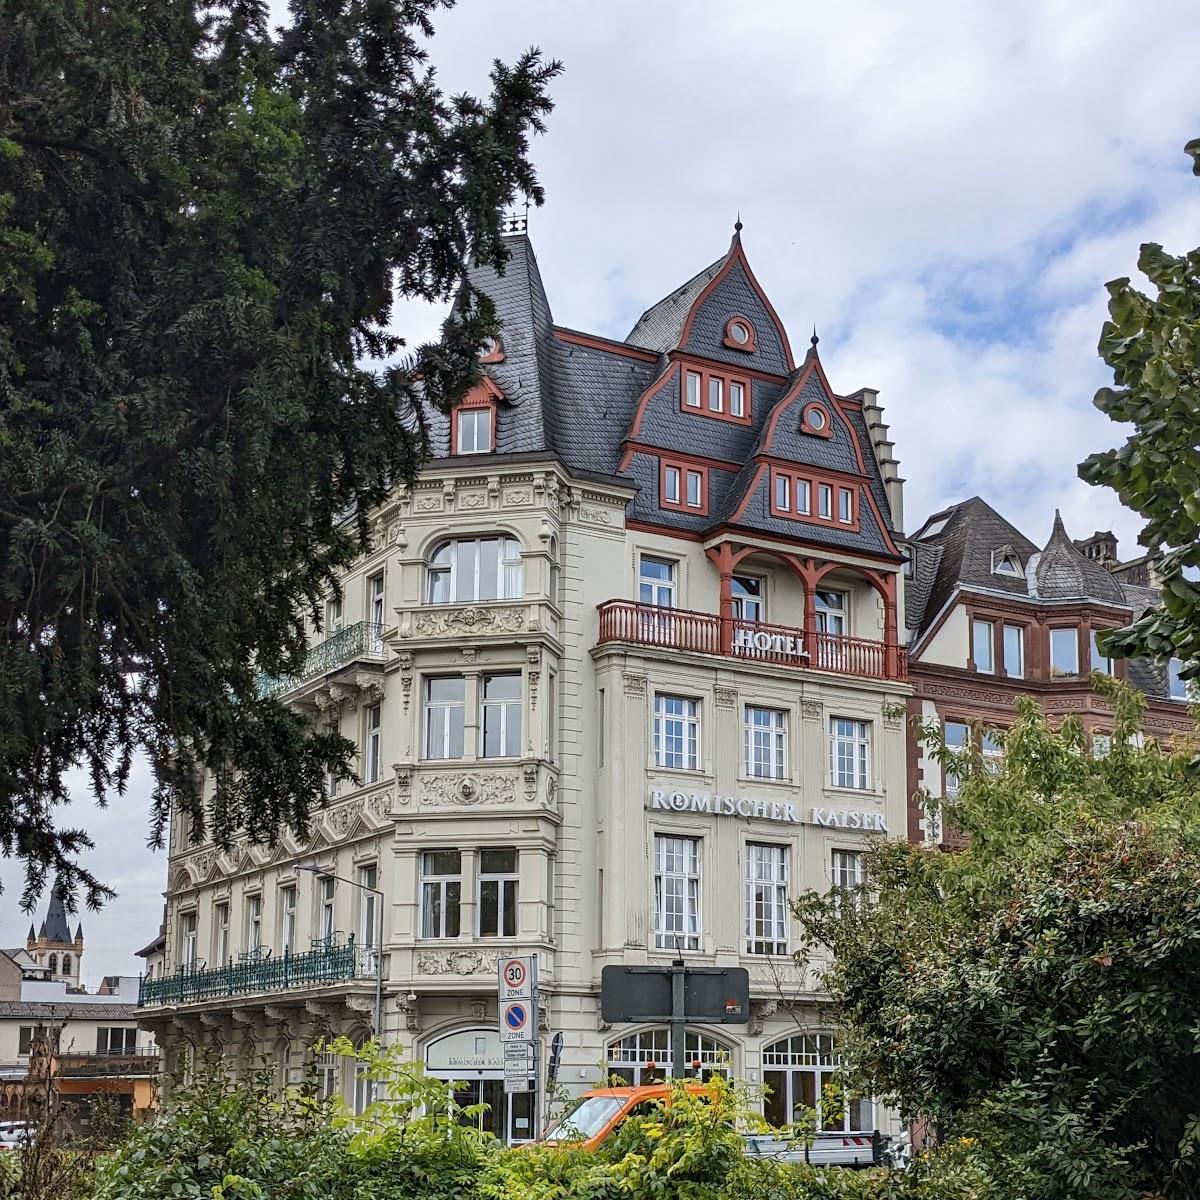 Restaurant "Hotel Roemischer Kaiser" in Trier